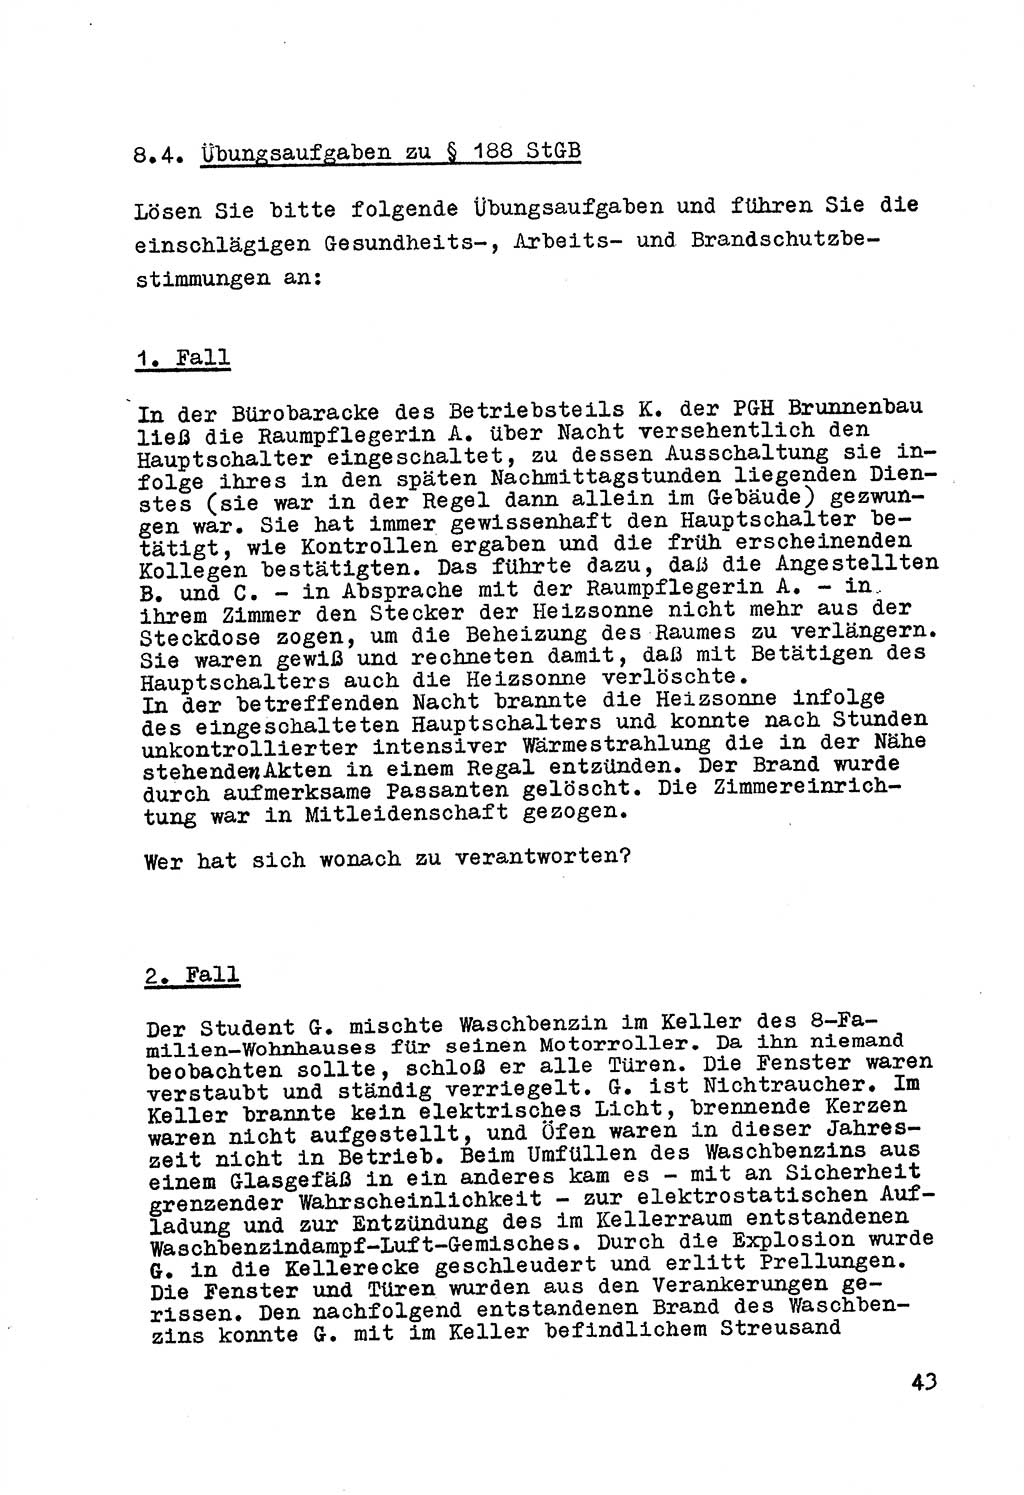 Strafrecht der DDR (Deutsche Demokratische Republik), Besonderer Teil, Lehrmaterial, Heft 7 1970, Seite 43 (Strafr. DDR BT Lehrmat. H. 7 1970, S. 43)